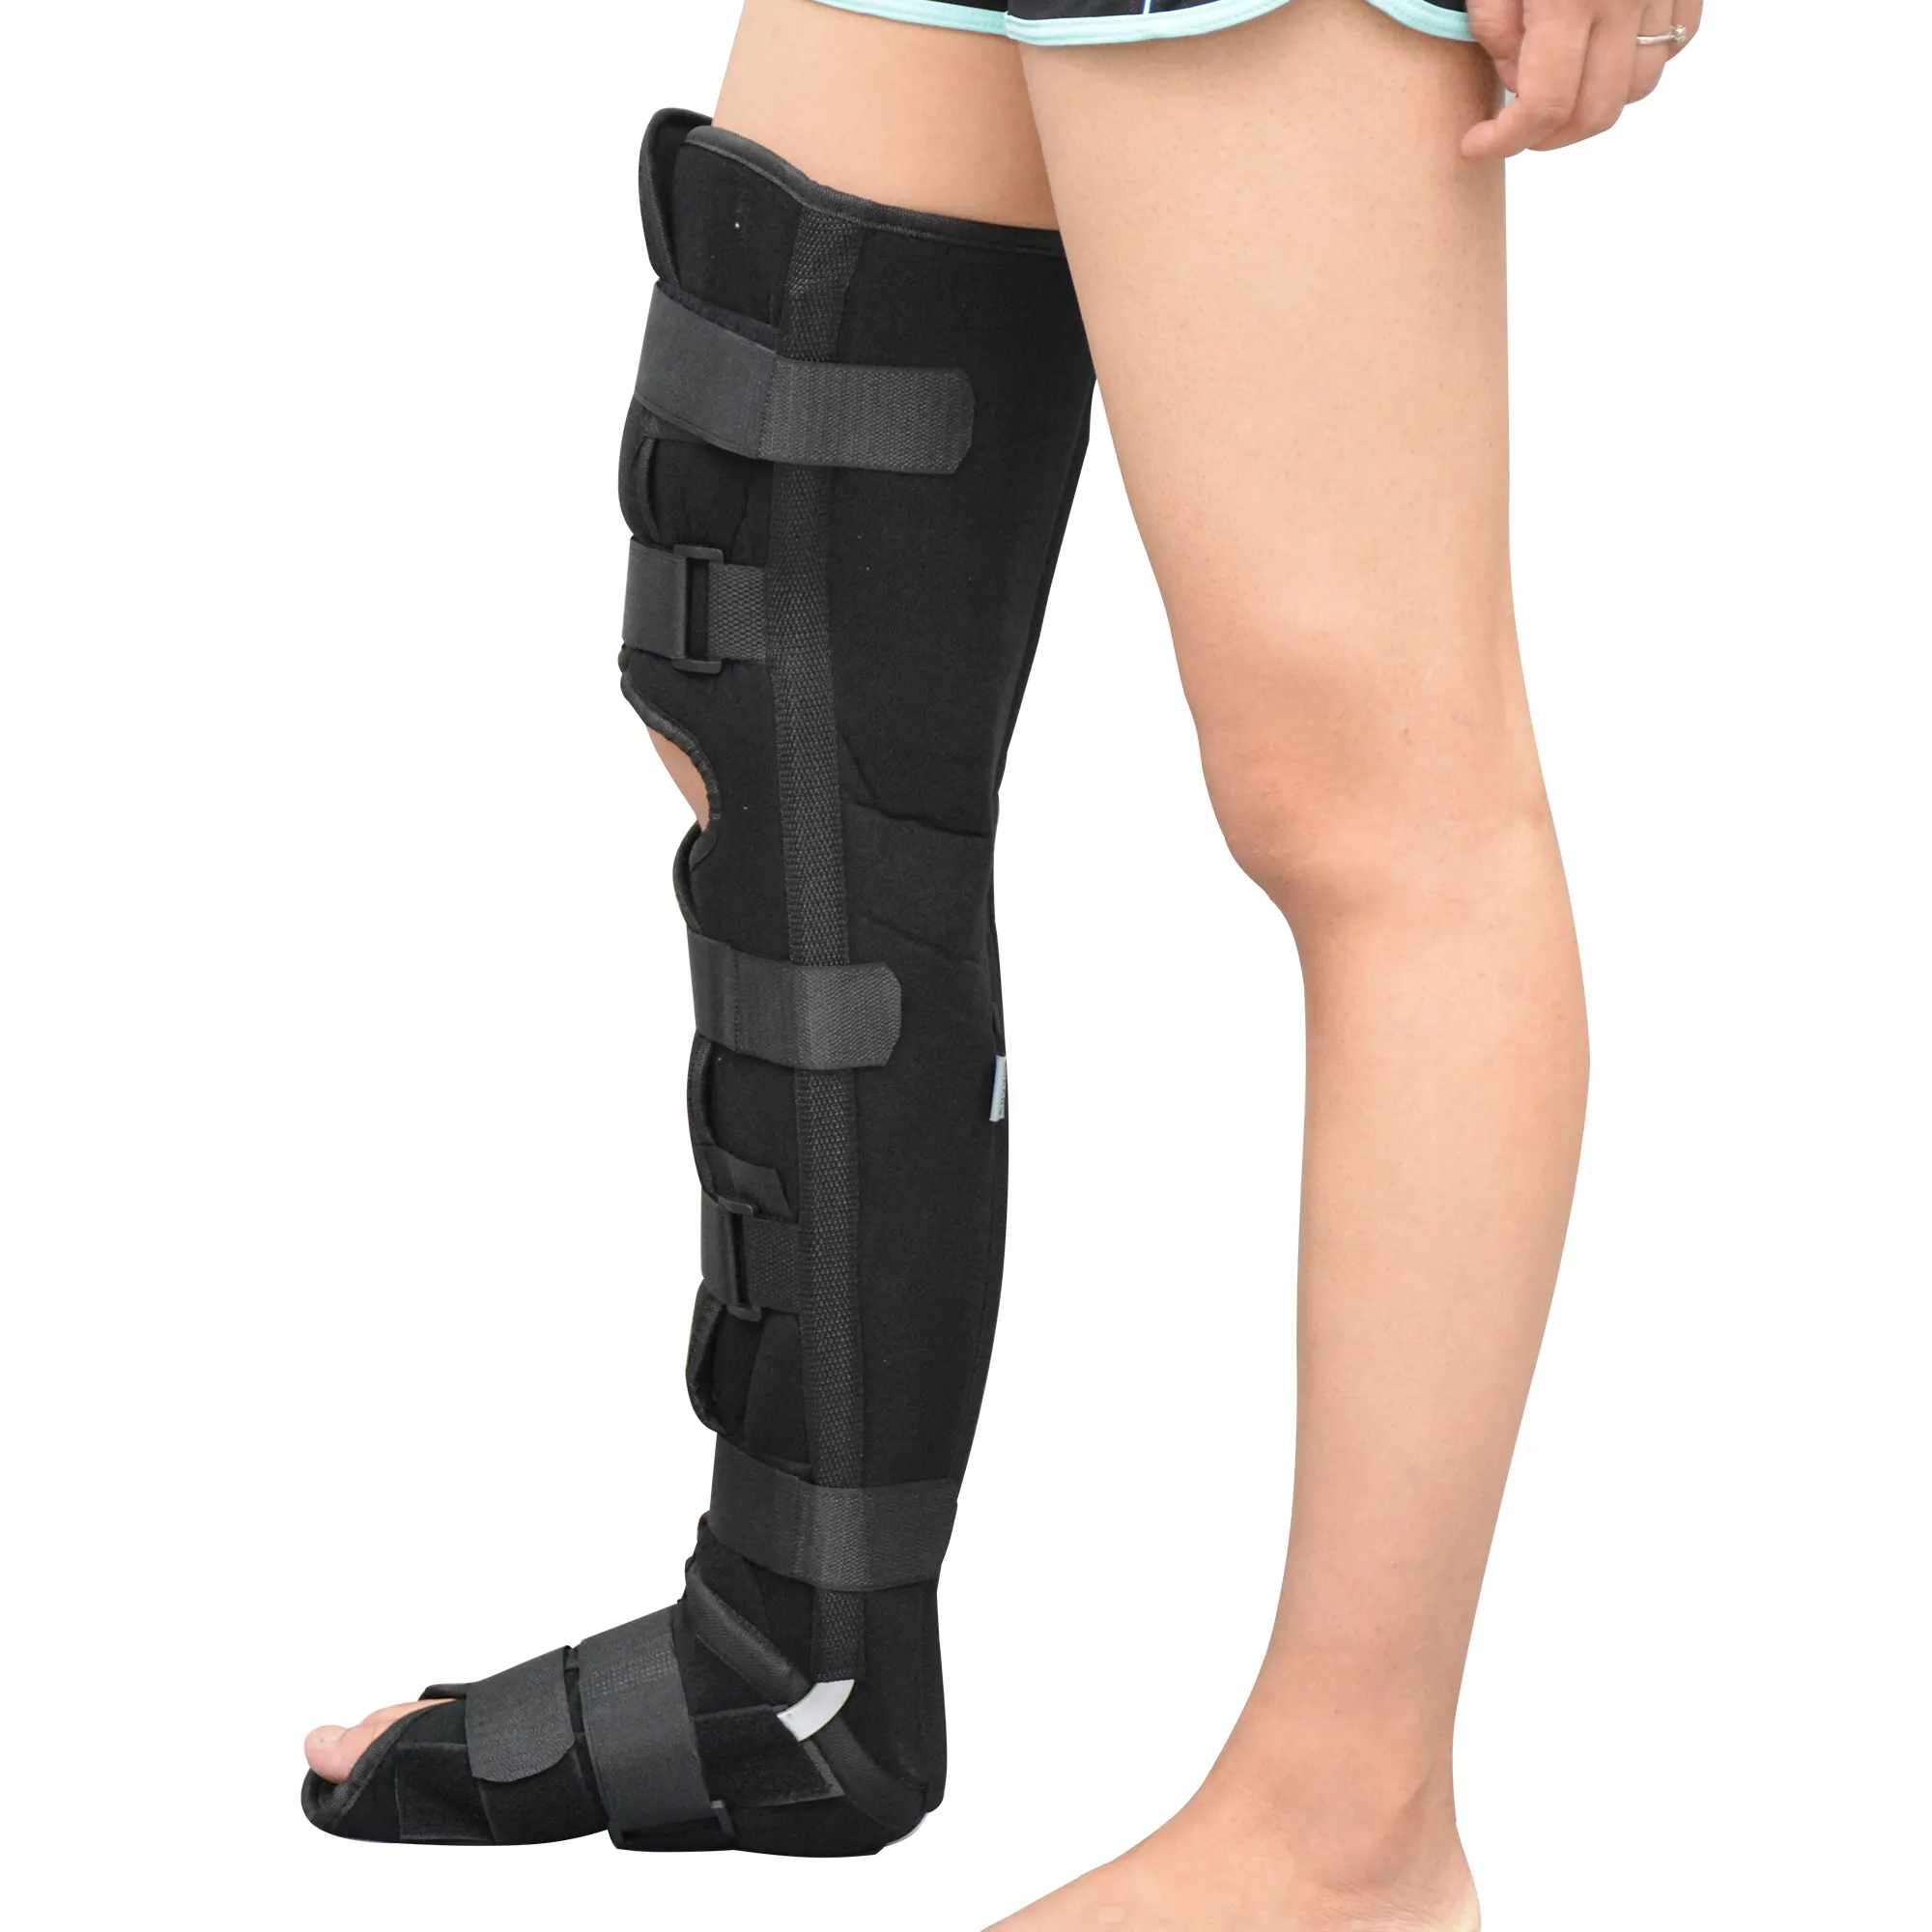 Nursing Care Rehabilitationsausrüstung Super-Knöchelbindungsgürtel für Patienten mit akuter Knöchelverschalung nach einer Oberschenkelfraktur